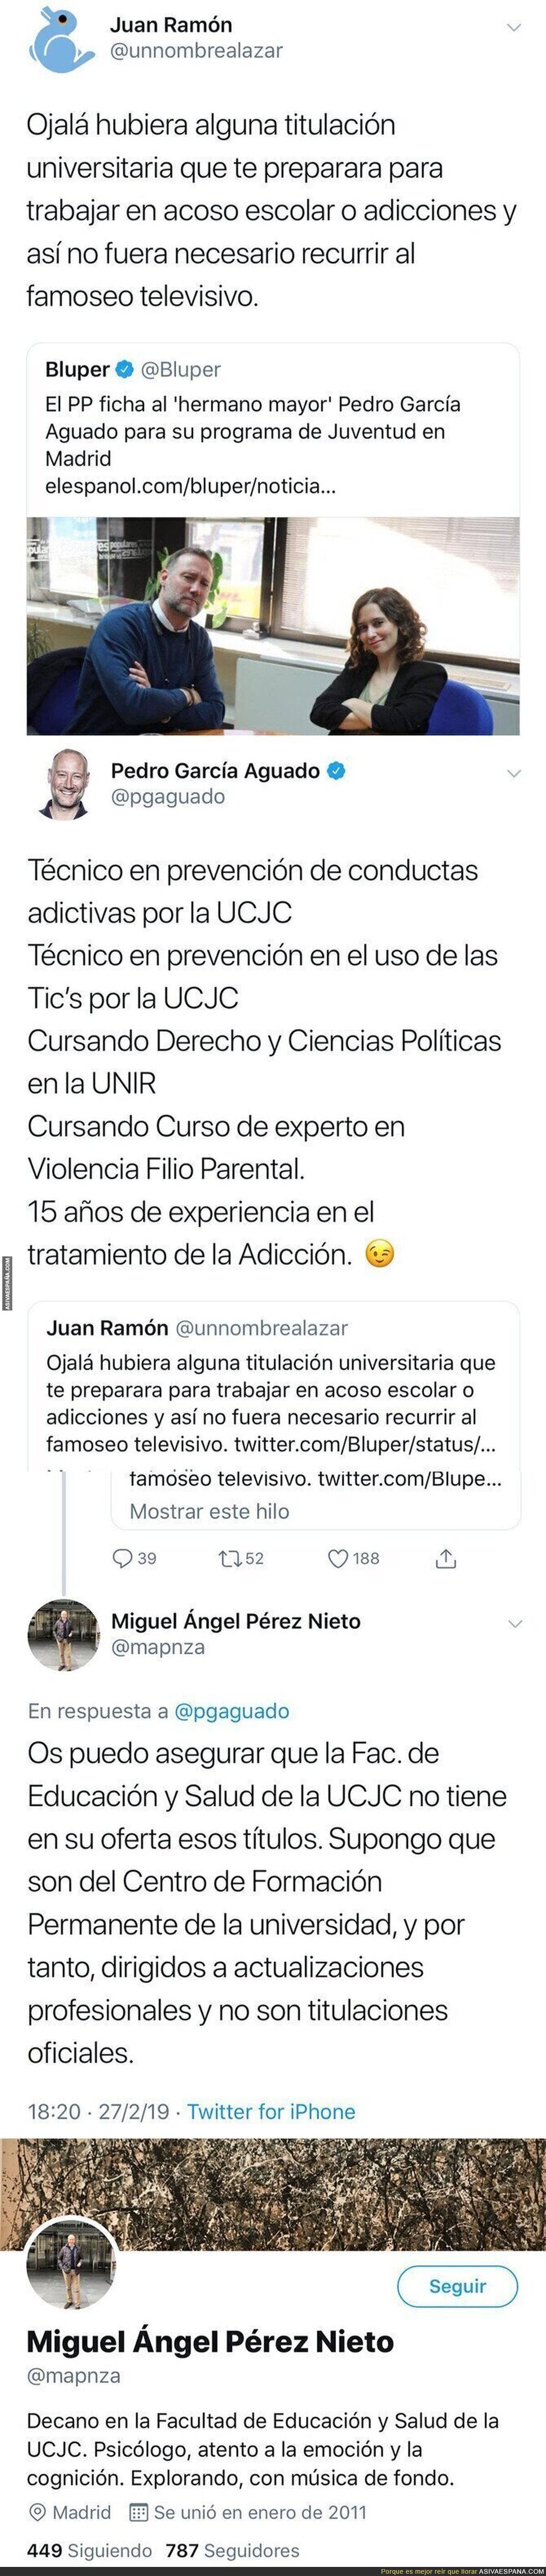 Pedro García Aguado saca pecho por unos estudios universitarios sobre acoso en la UCJC y un decano le da un ZAS memorable